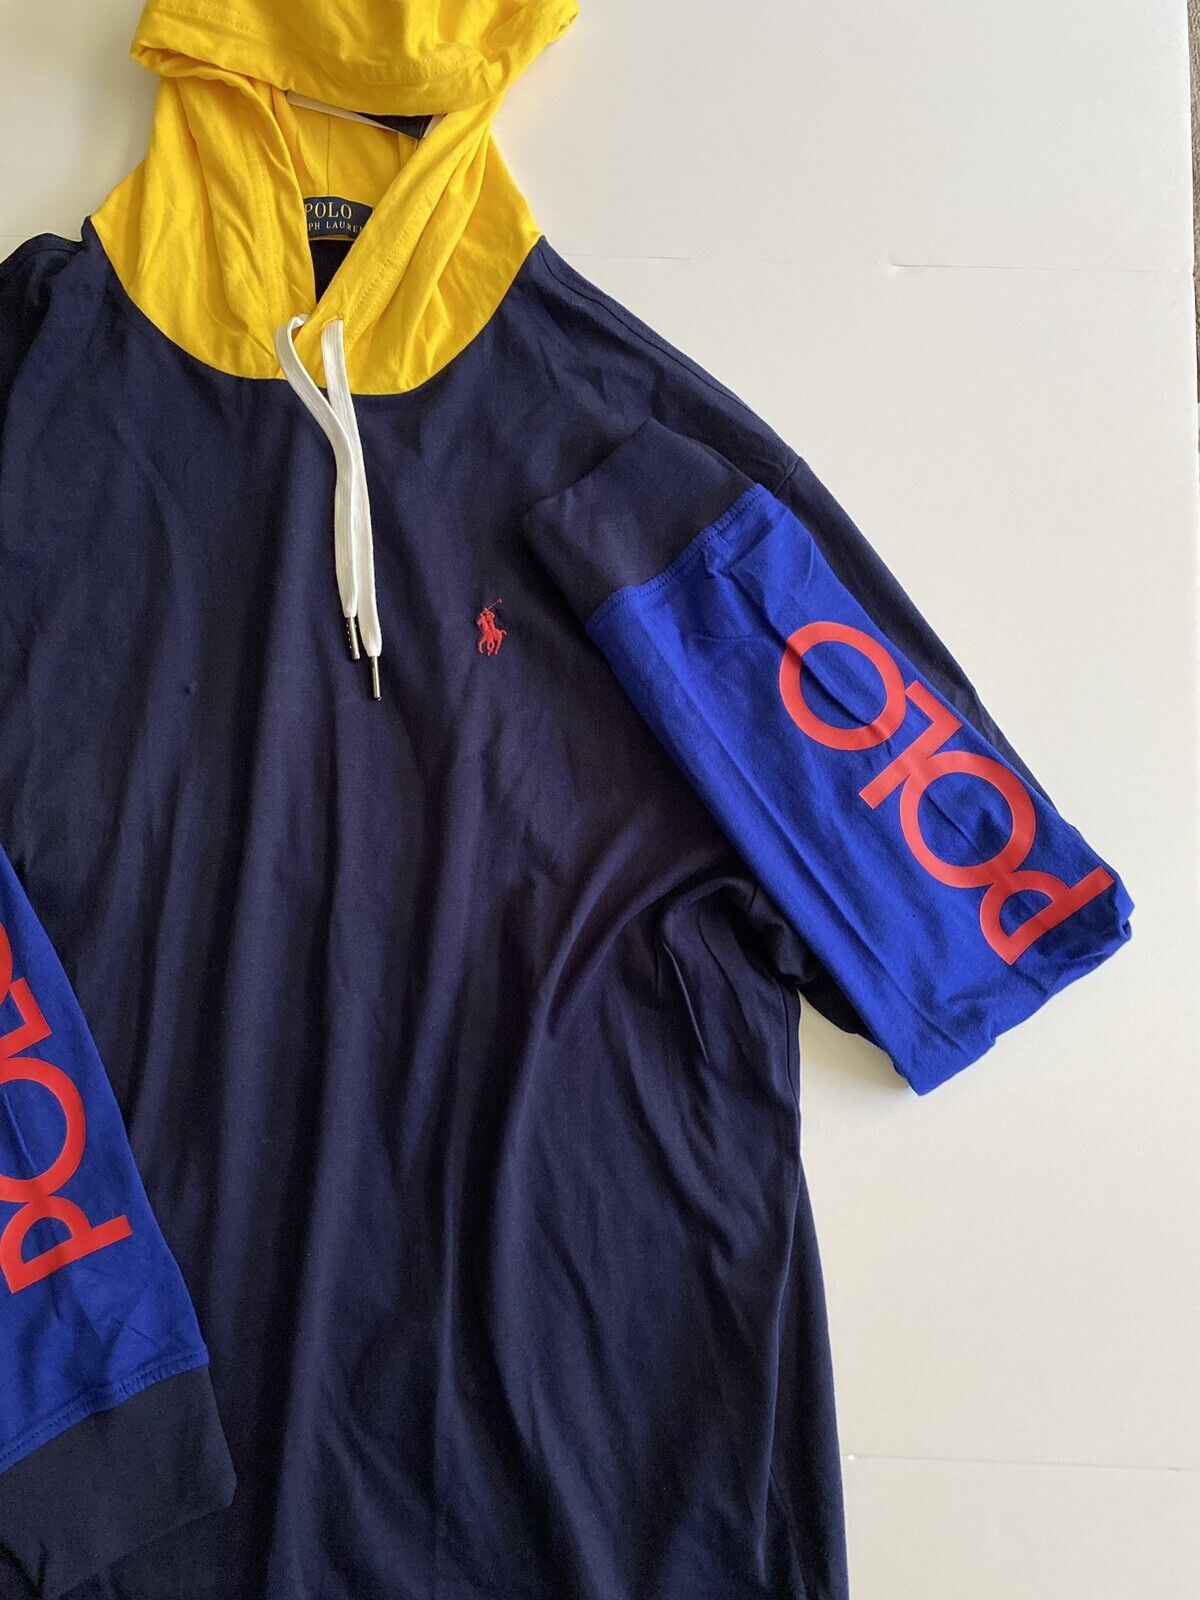 NWT Polo Ralph Lauren Толстовка с длинным рукавом и фирменным логотипом Темно-синяя толстовка 2XL 